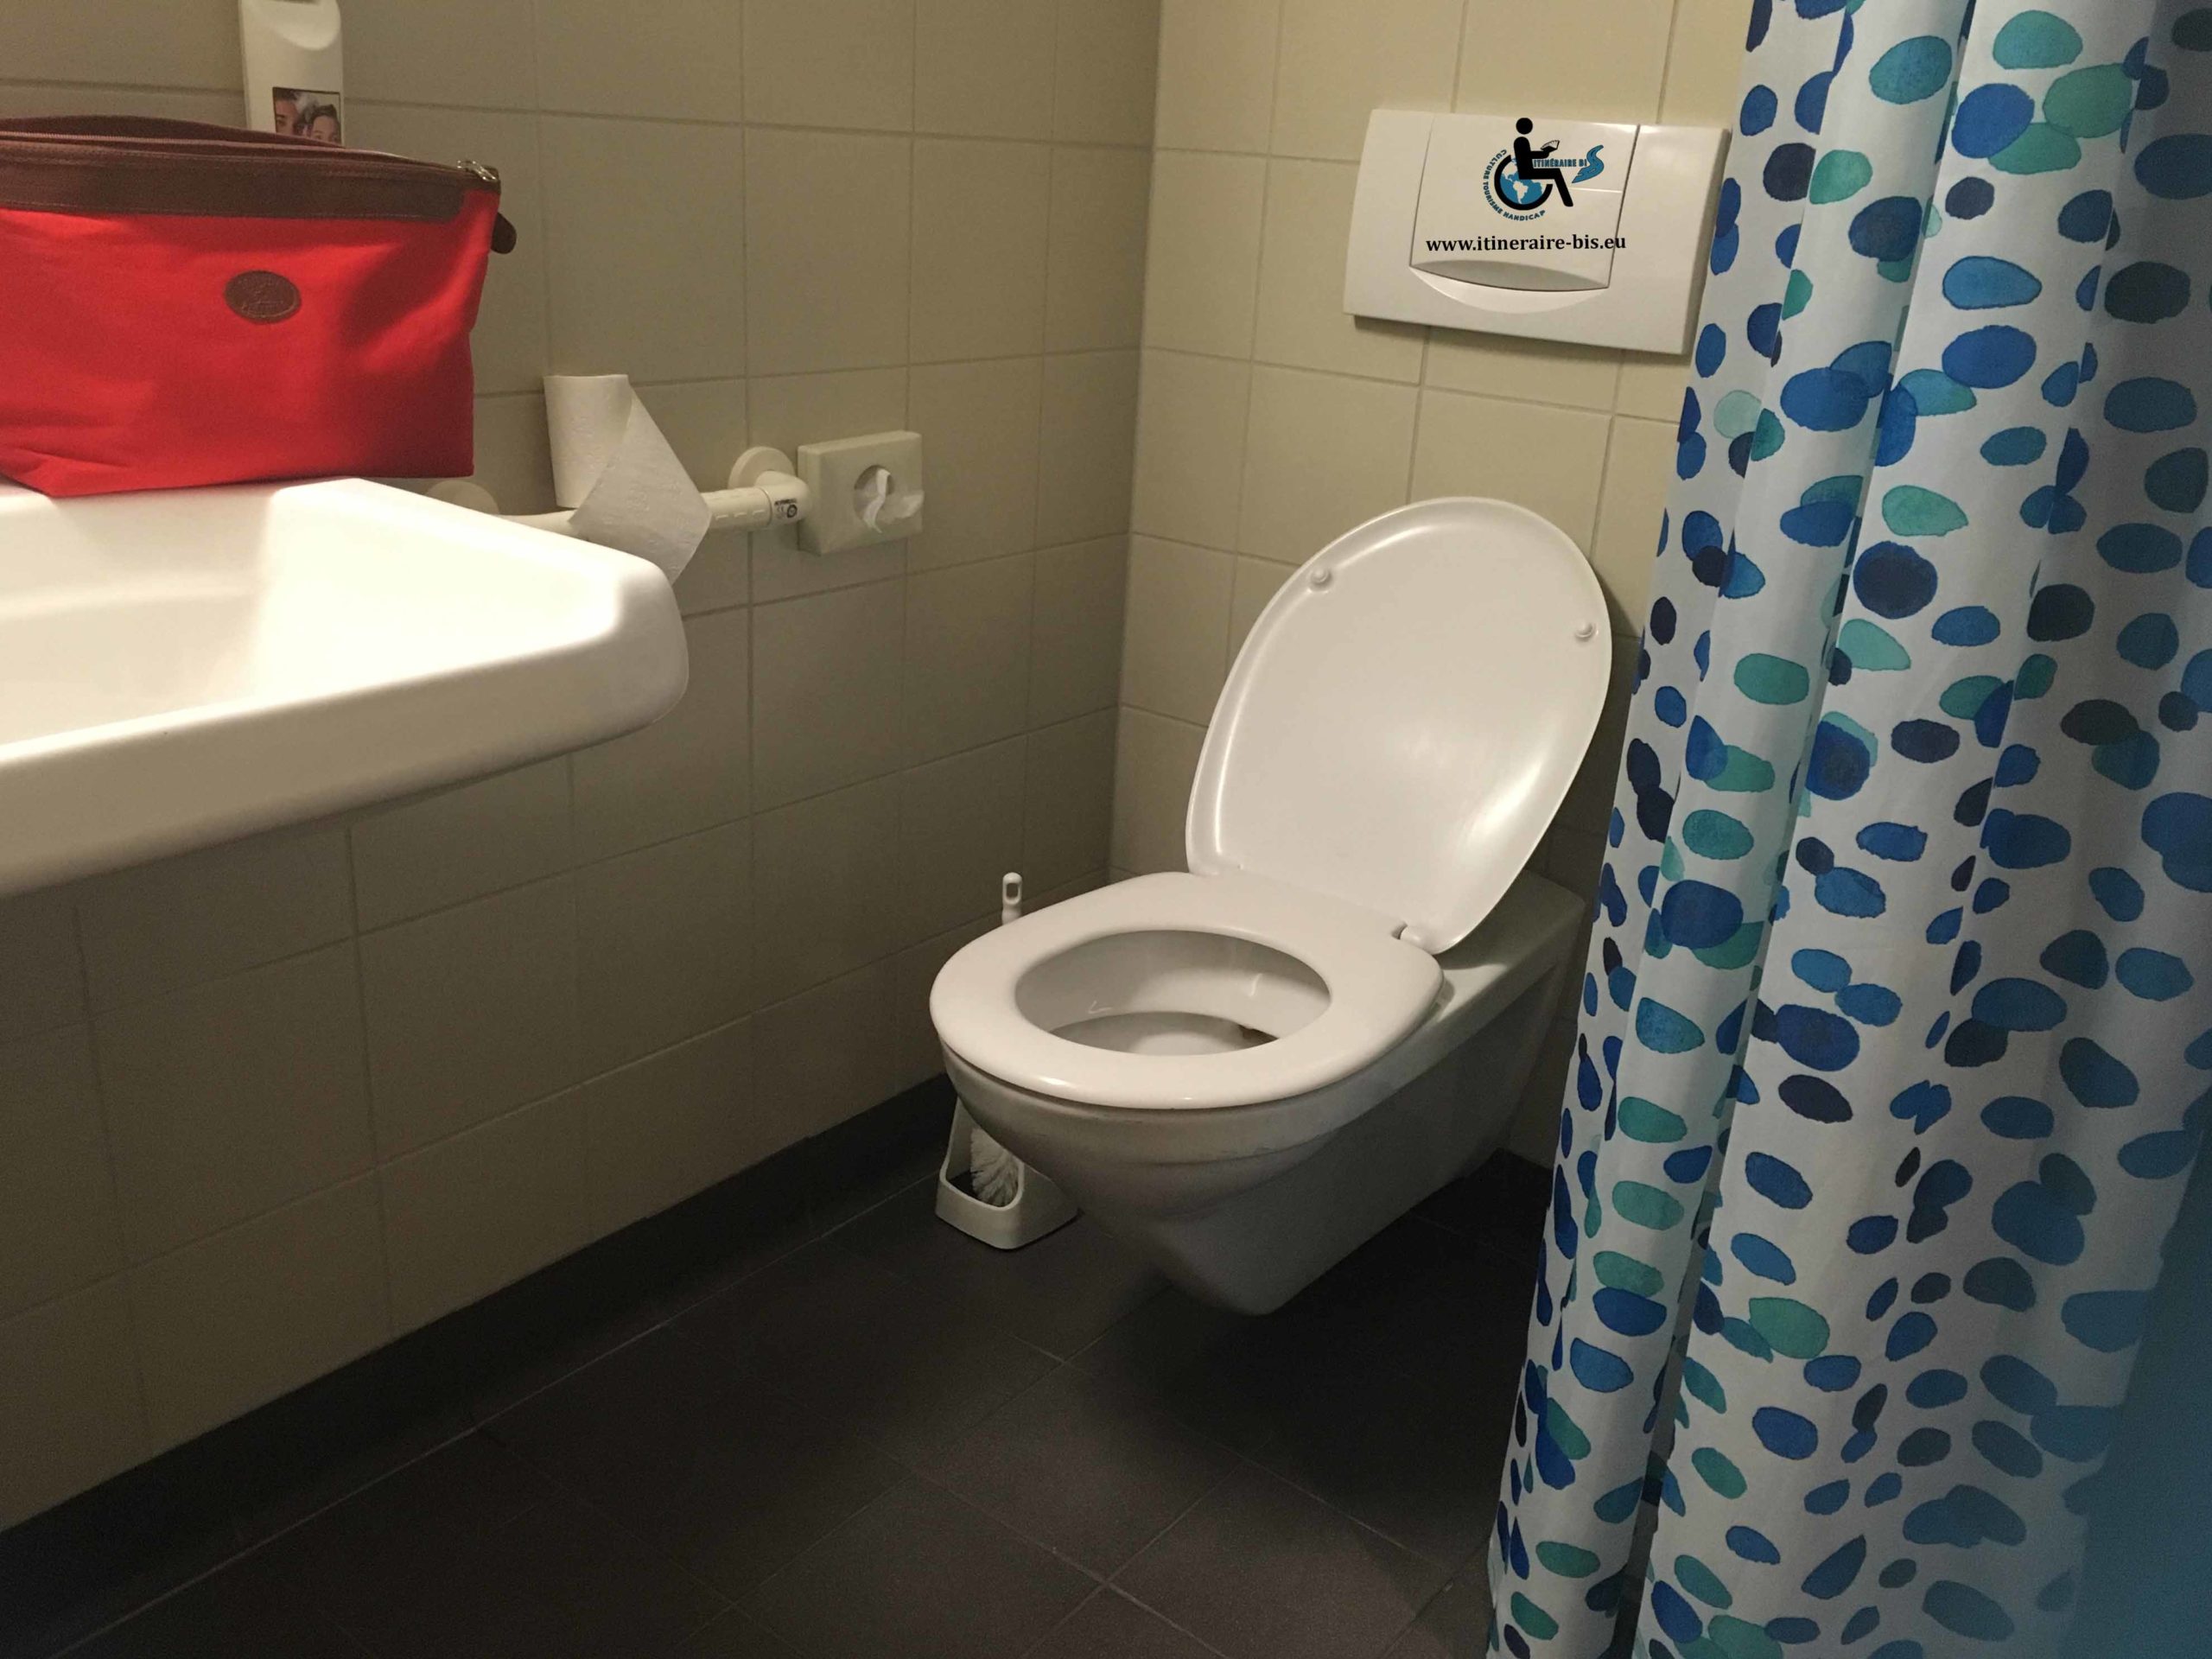 Toilette réhaussé et lavabo plat